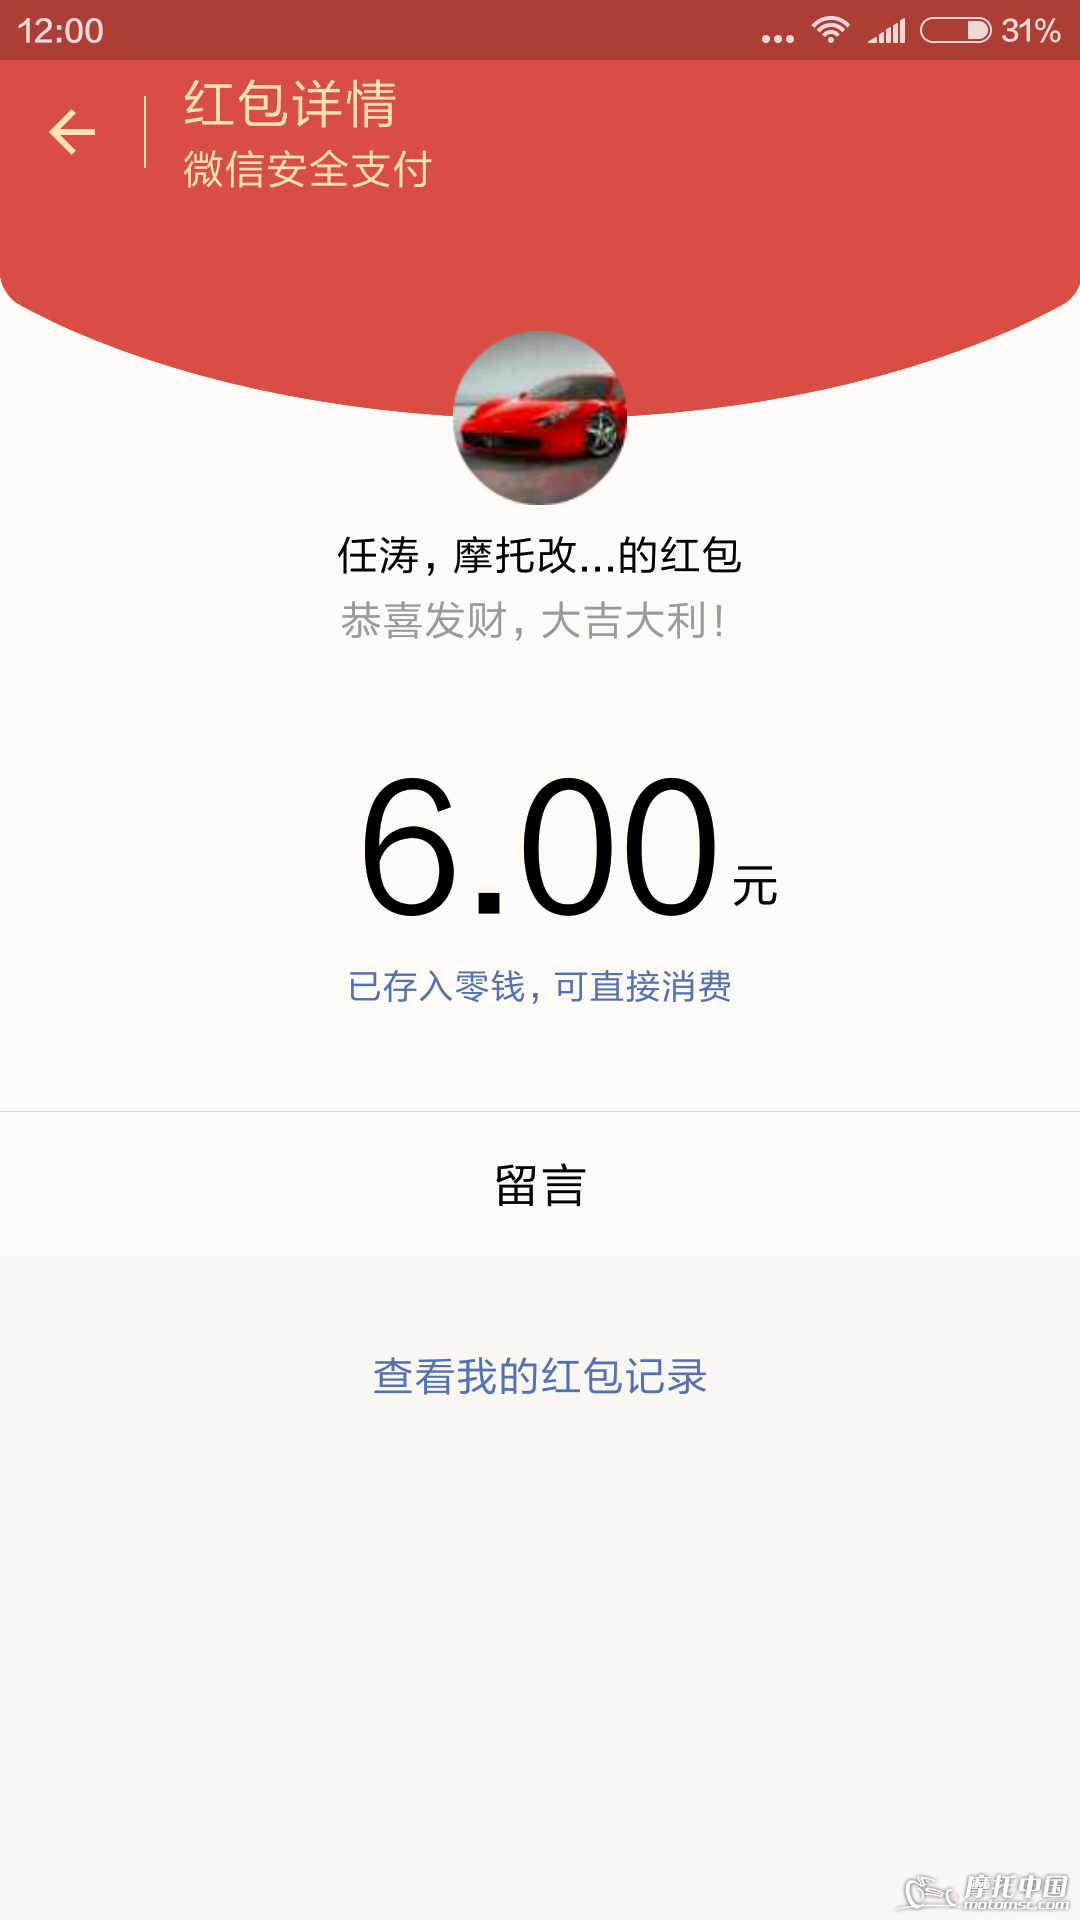 Screenshot_2016-02-25-12-00-26_com.tencent.mm.png